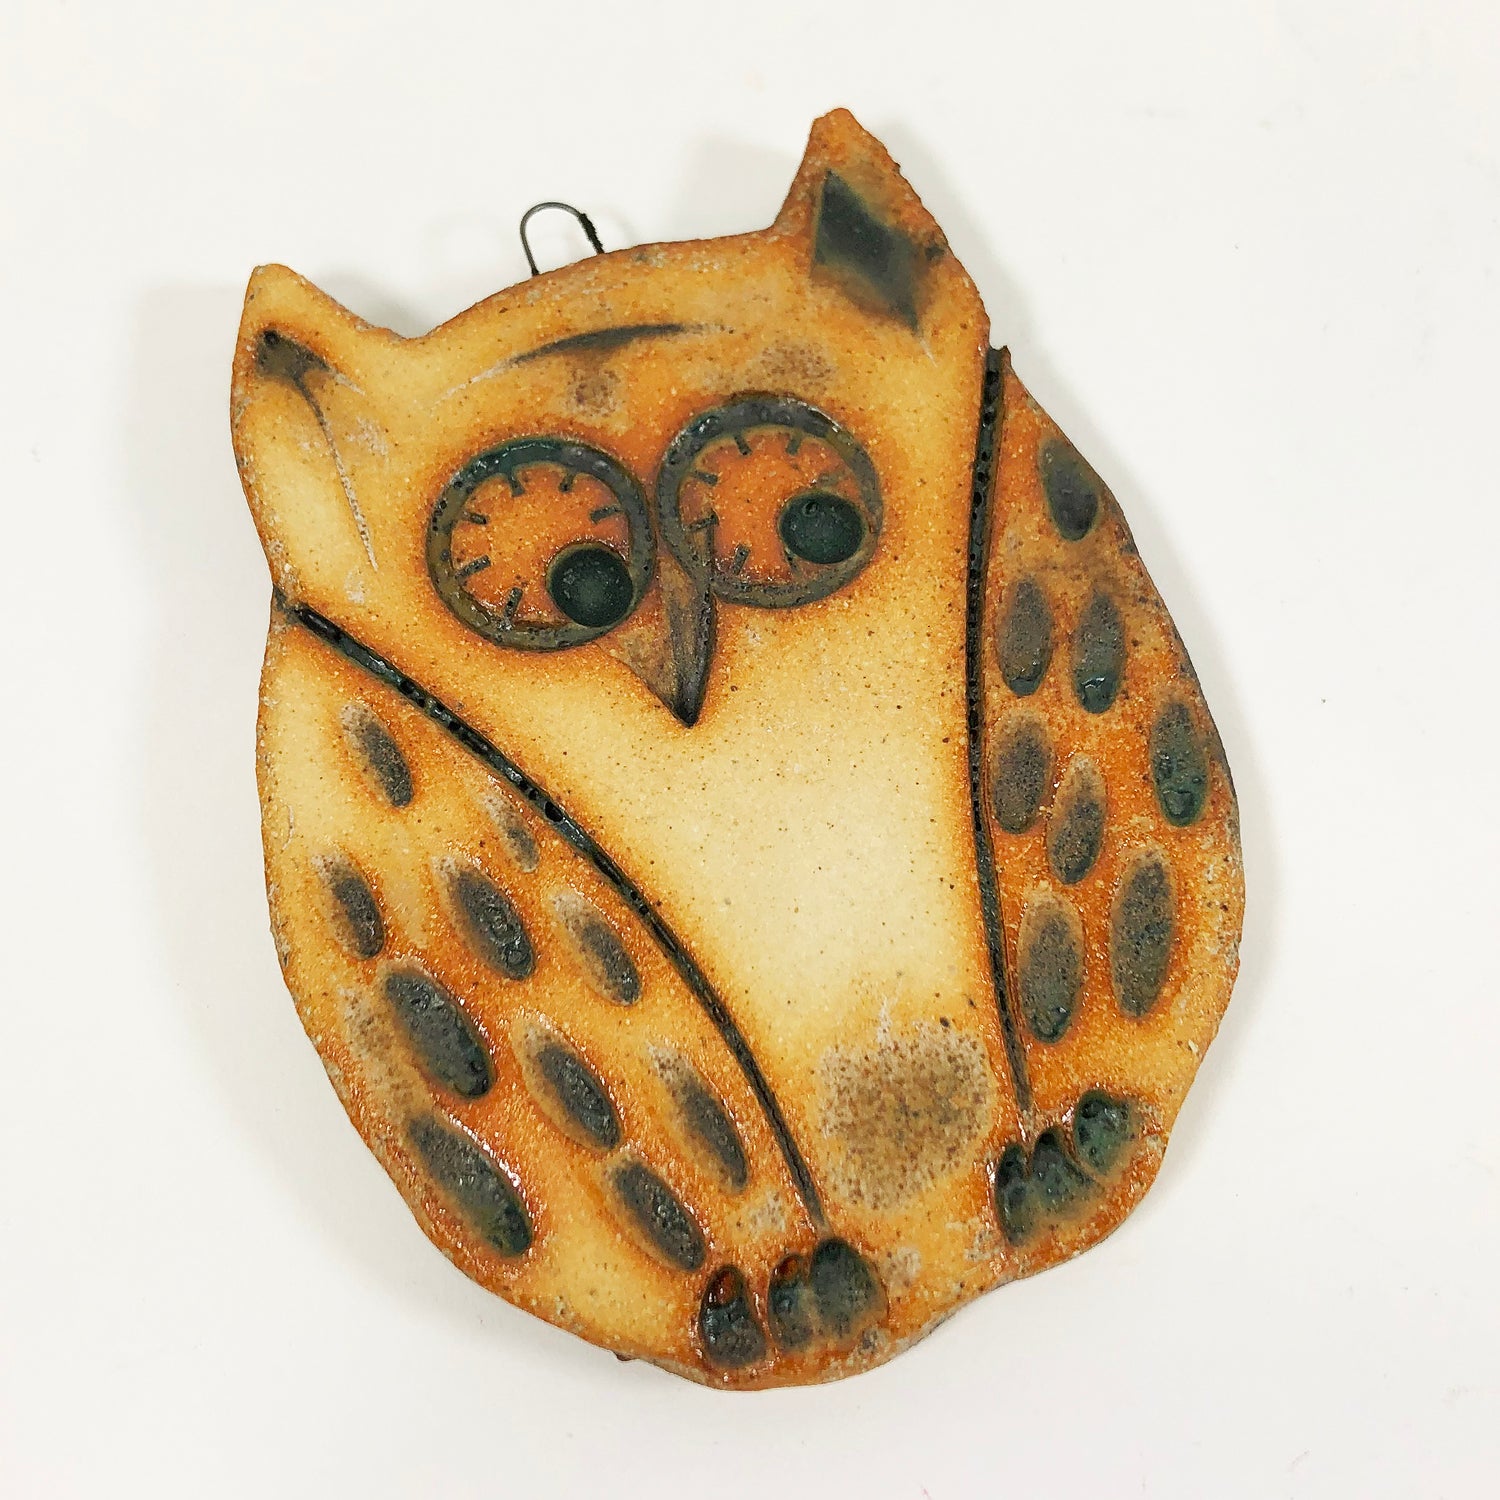 Ceramic Owl Ornament